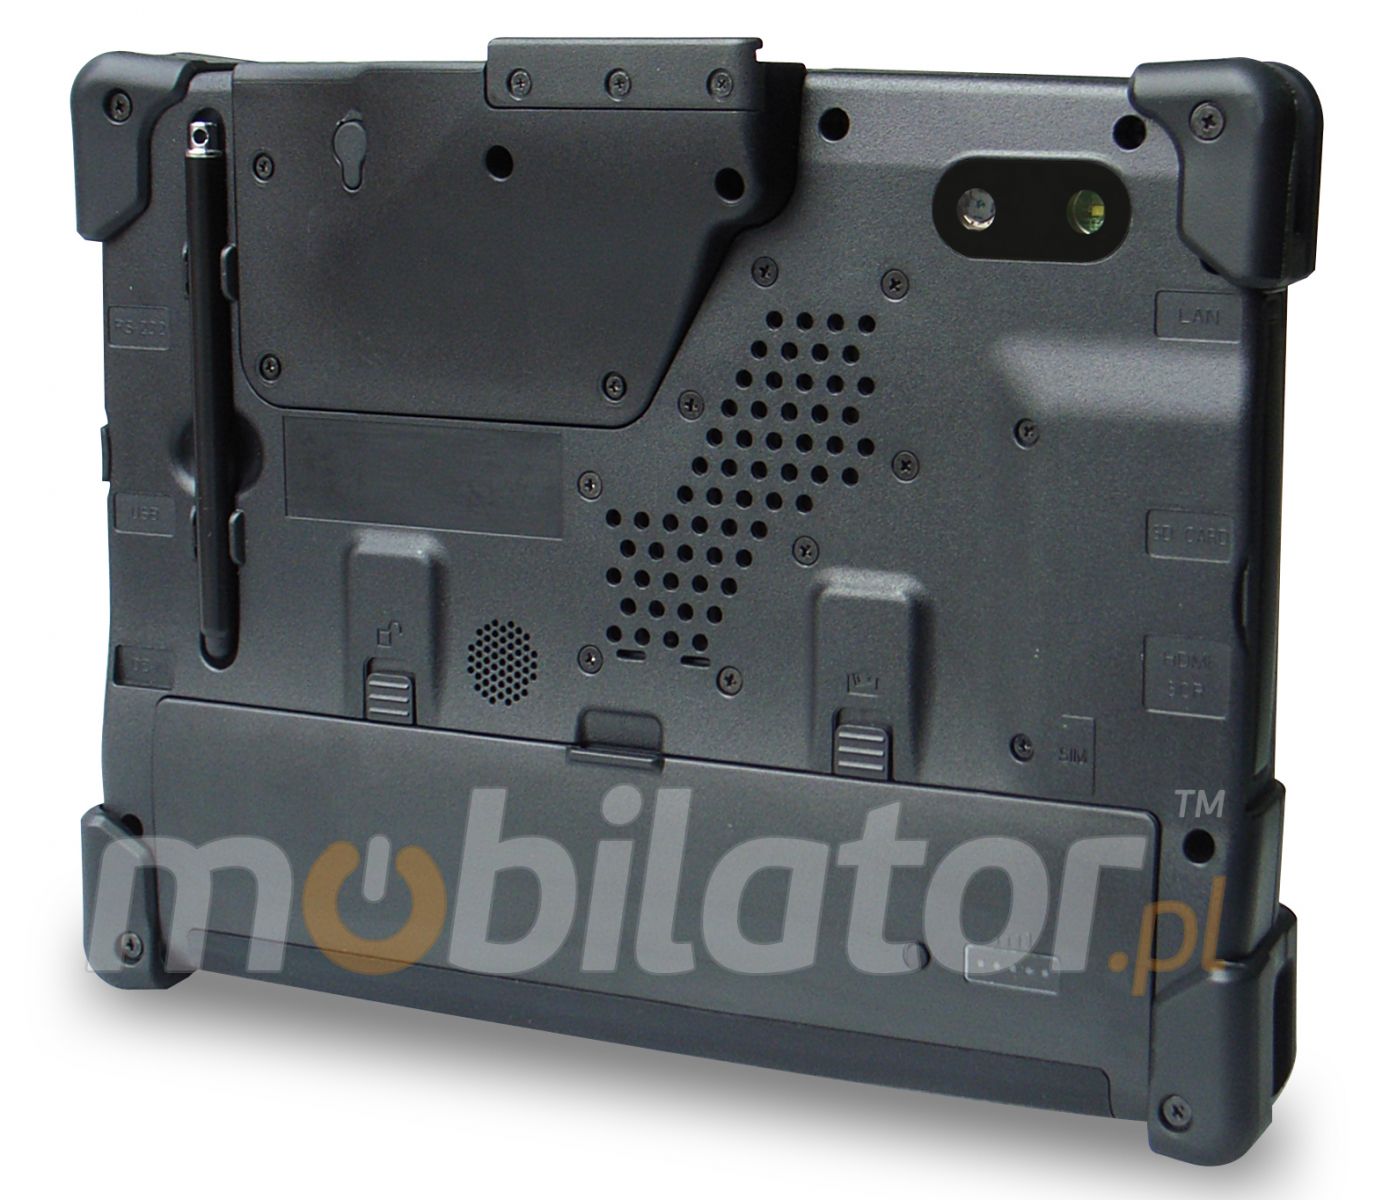 2d barcode scanner imobile 863 mobilator ergonomic design industrial tablet resistance convenience